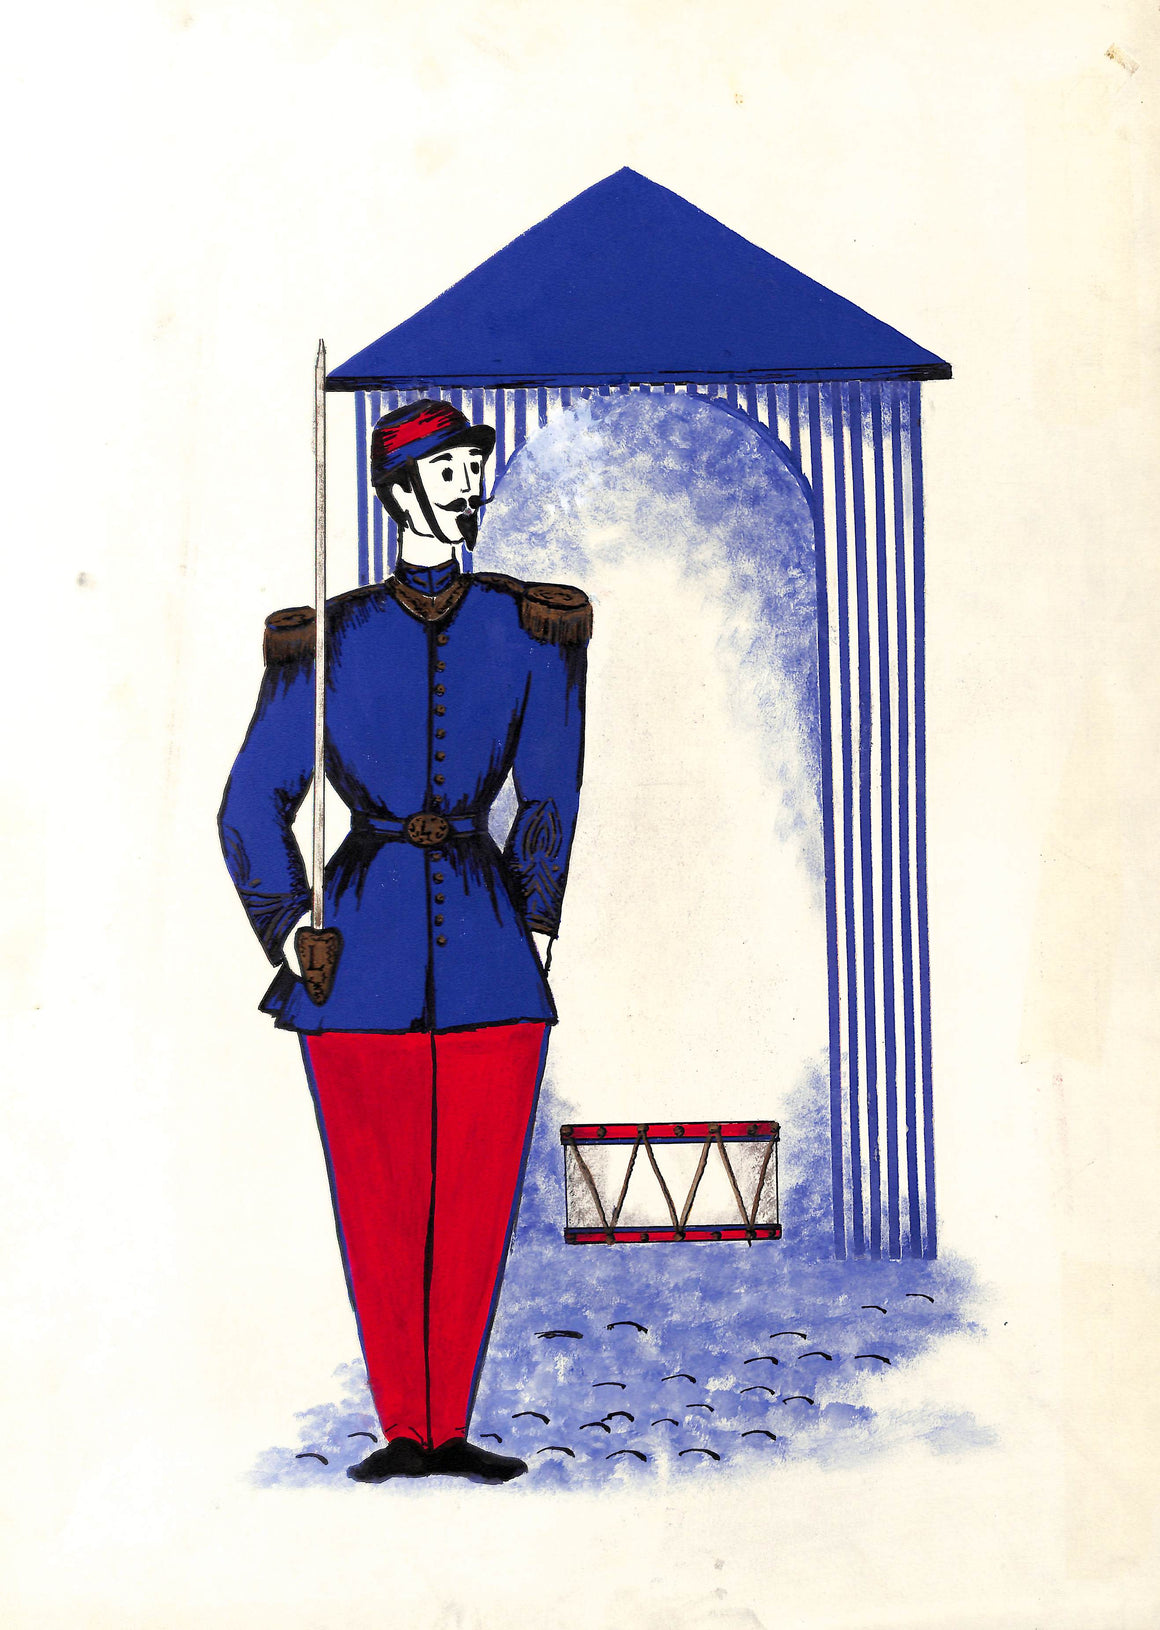 Lanvin Of Paris Original c1950s Advertising Watercolor Artwork